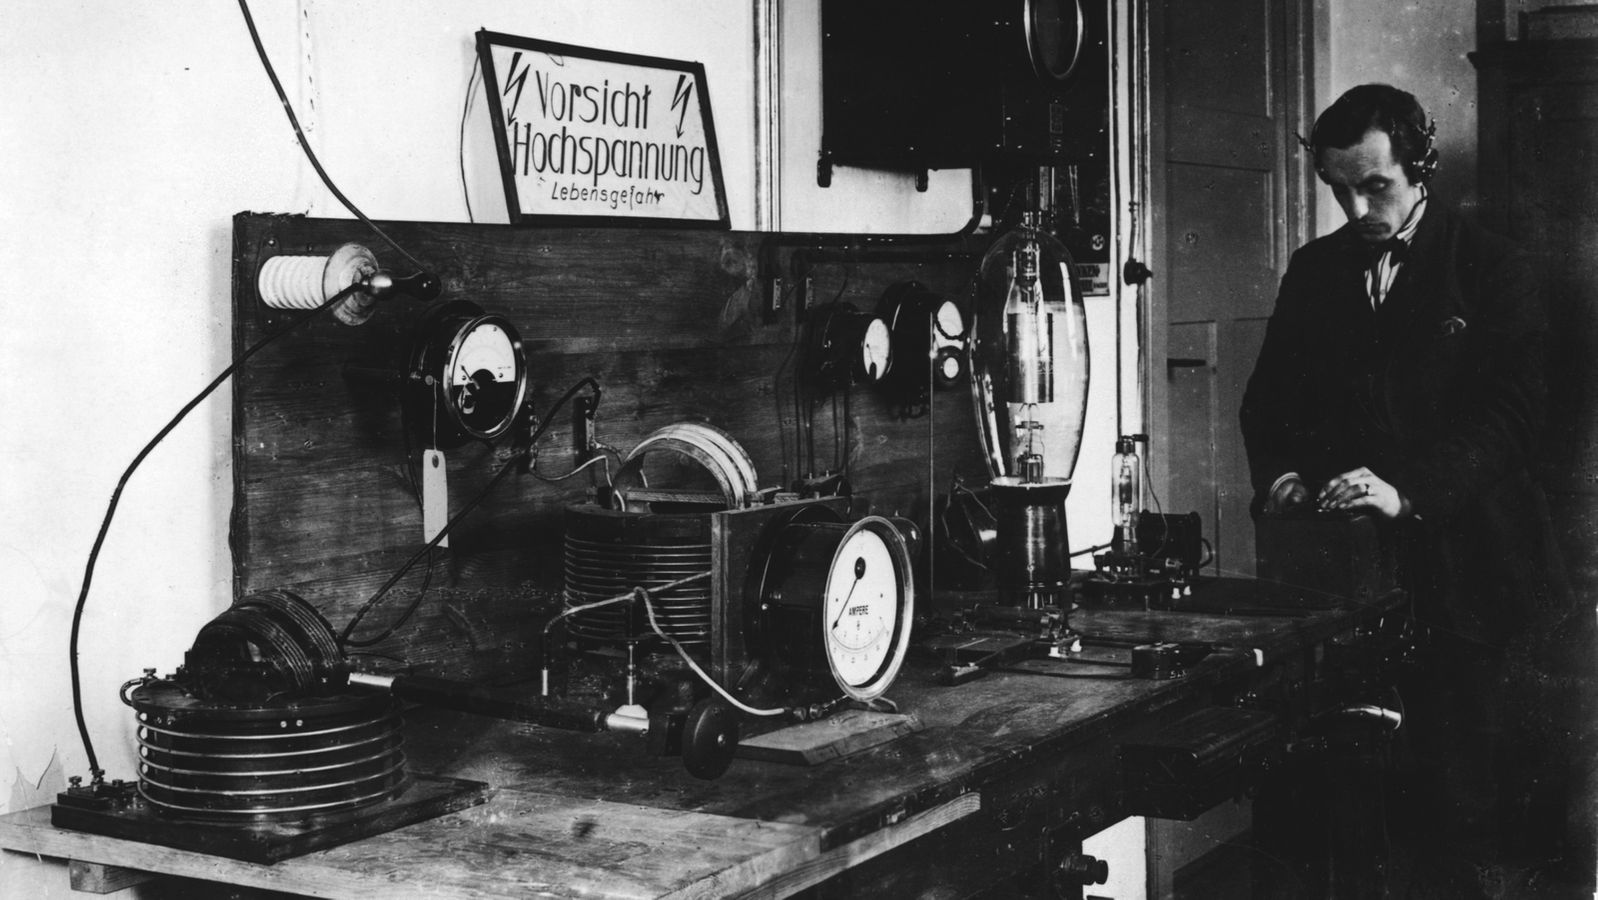 Vor 100 Jahren Die Geschichte des Radios in Deutschland